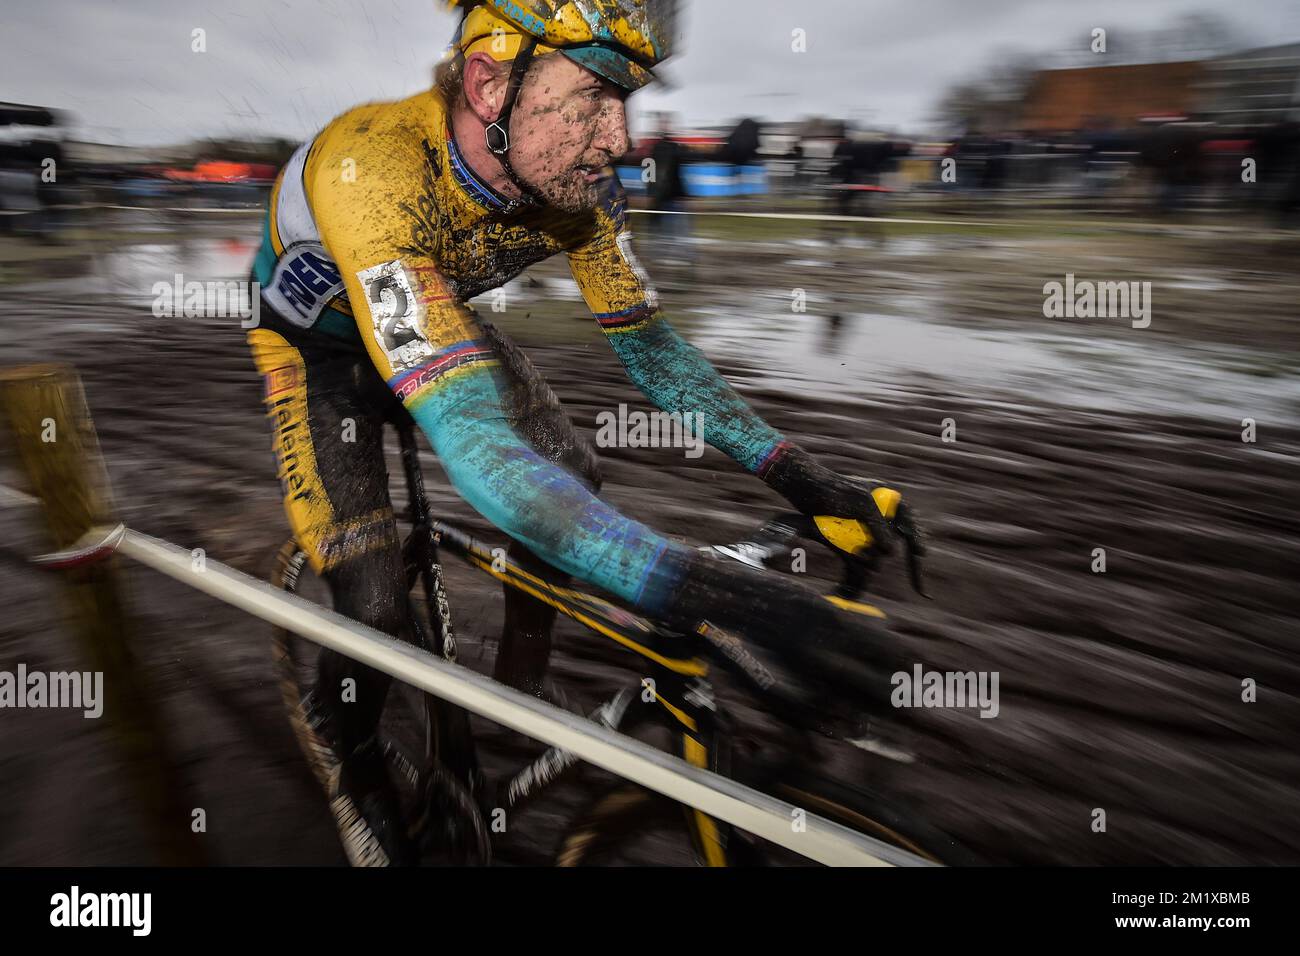 20141227 - BREDENE, BELGIQUE: Belge Bart Wellens photographié en action  lors de la course cycliste Versluys 'Ereprijs Paul Herygers' à Bredene,  samedi 27 décembre 2014. BELGA PHOTO DAVID STOCKMAN Photo Stock - Alamy